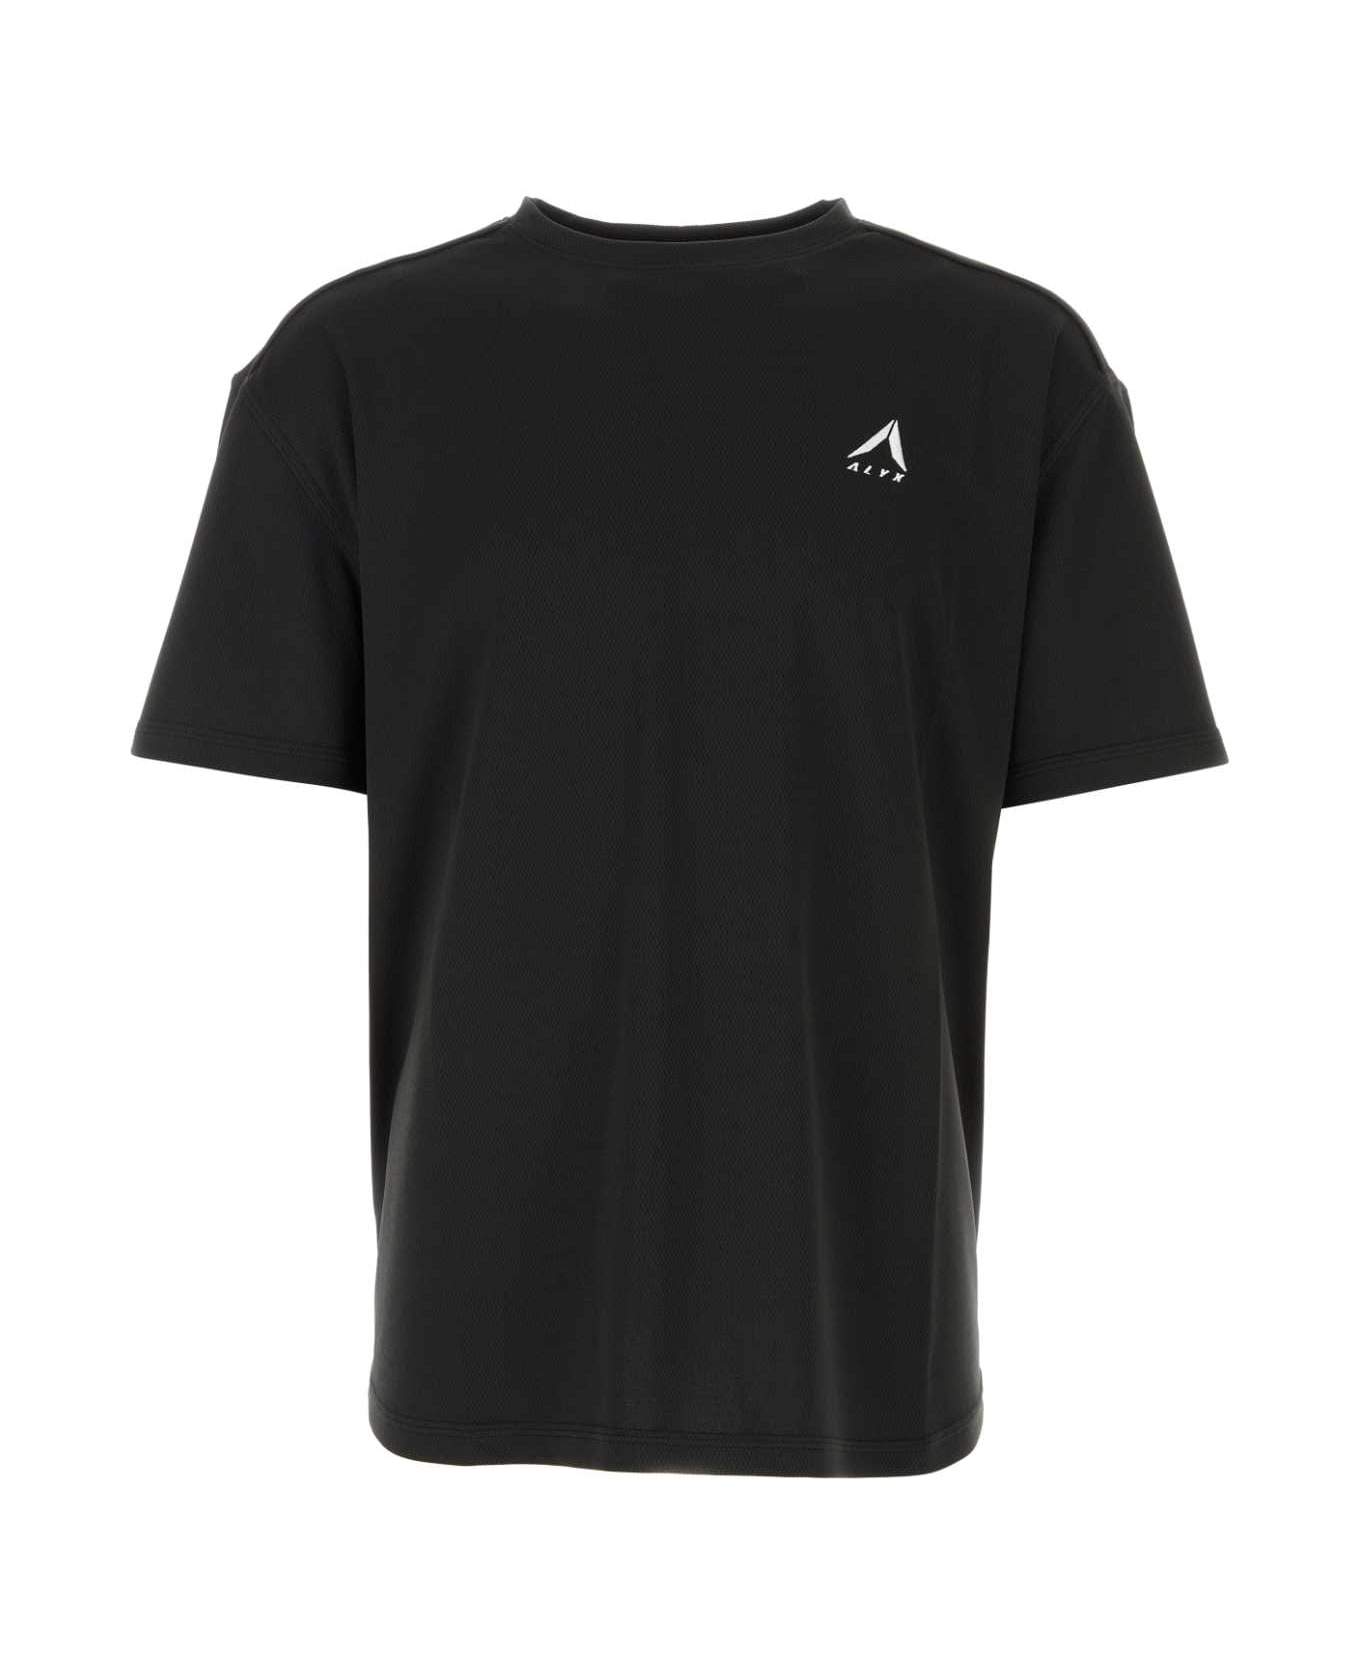 1017 ALYX 9SM Black Mesh T-shirt - BLACK